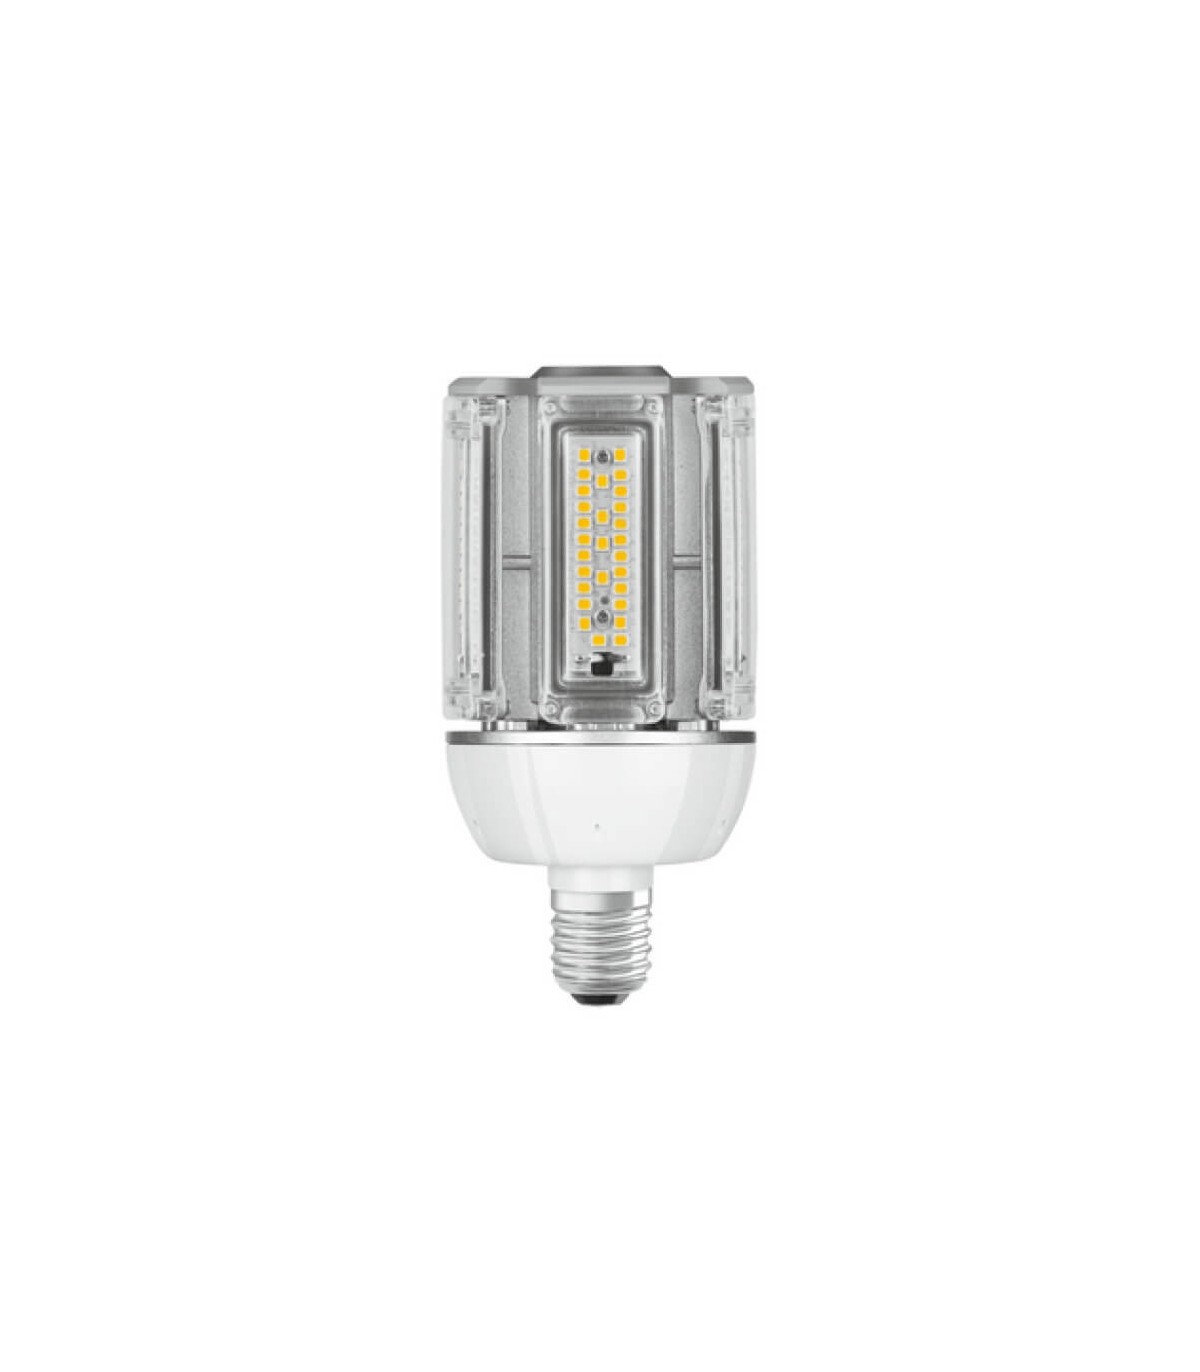 Acheter pack éco 3 ampoules LED Osram E27 6,5W verre transparent